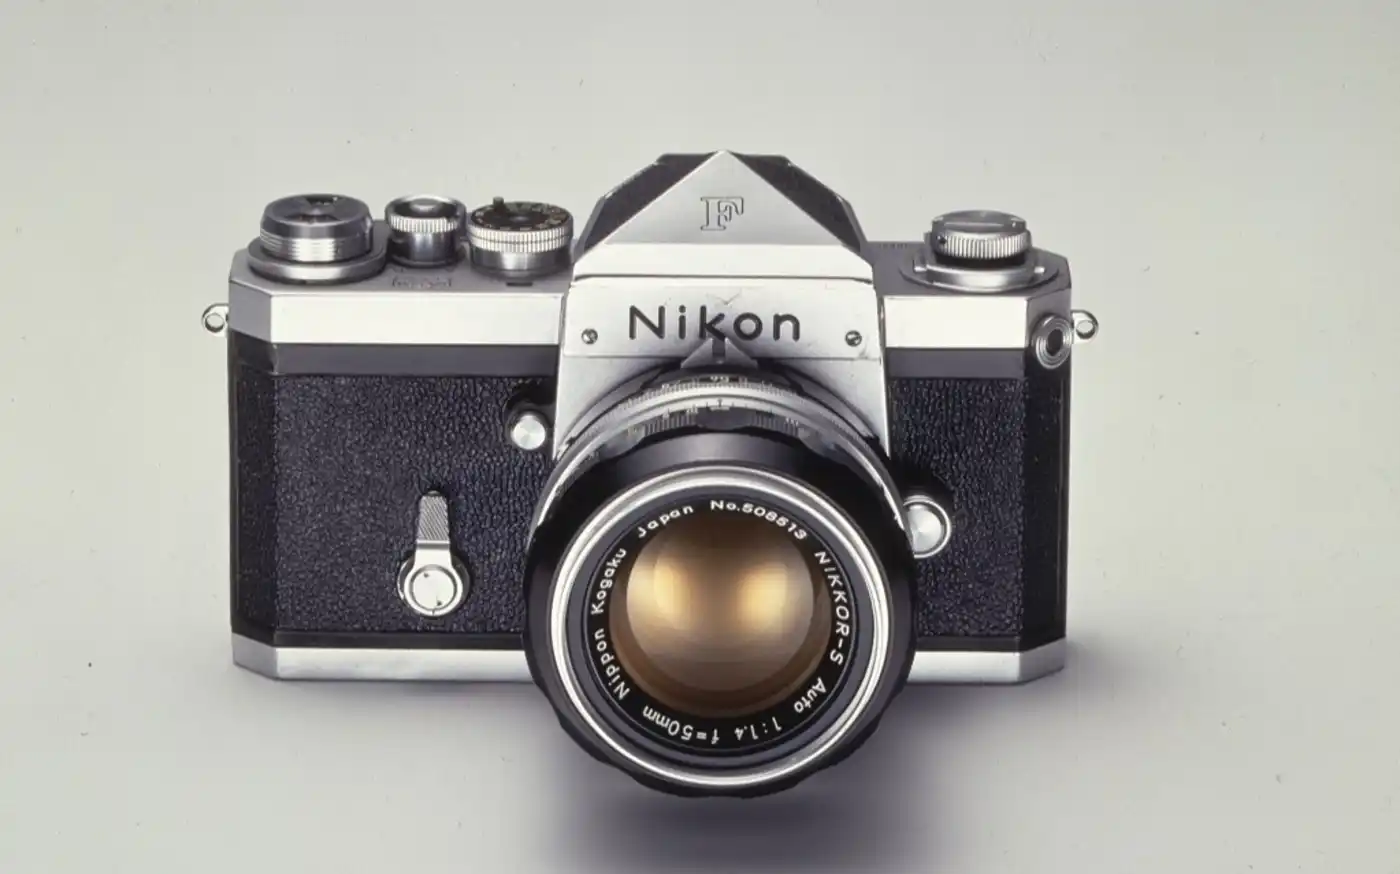 Nikon khép lại cuốn sách về sáu thập kỷ lịch sử máy ảnh SLR - Ảnh 1.